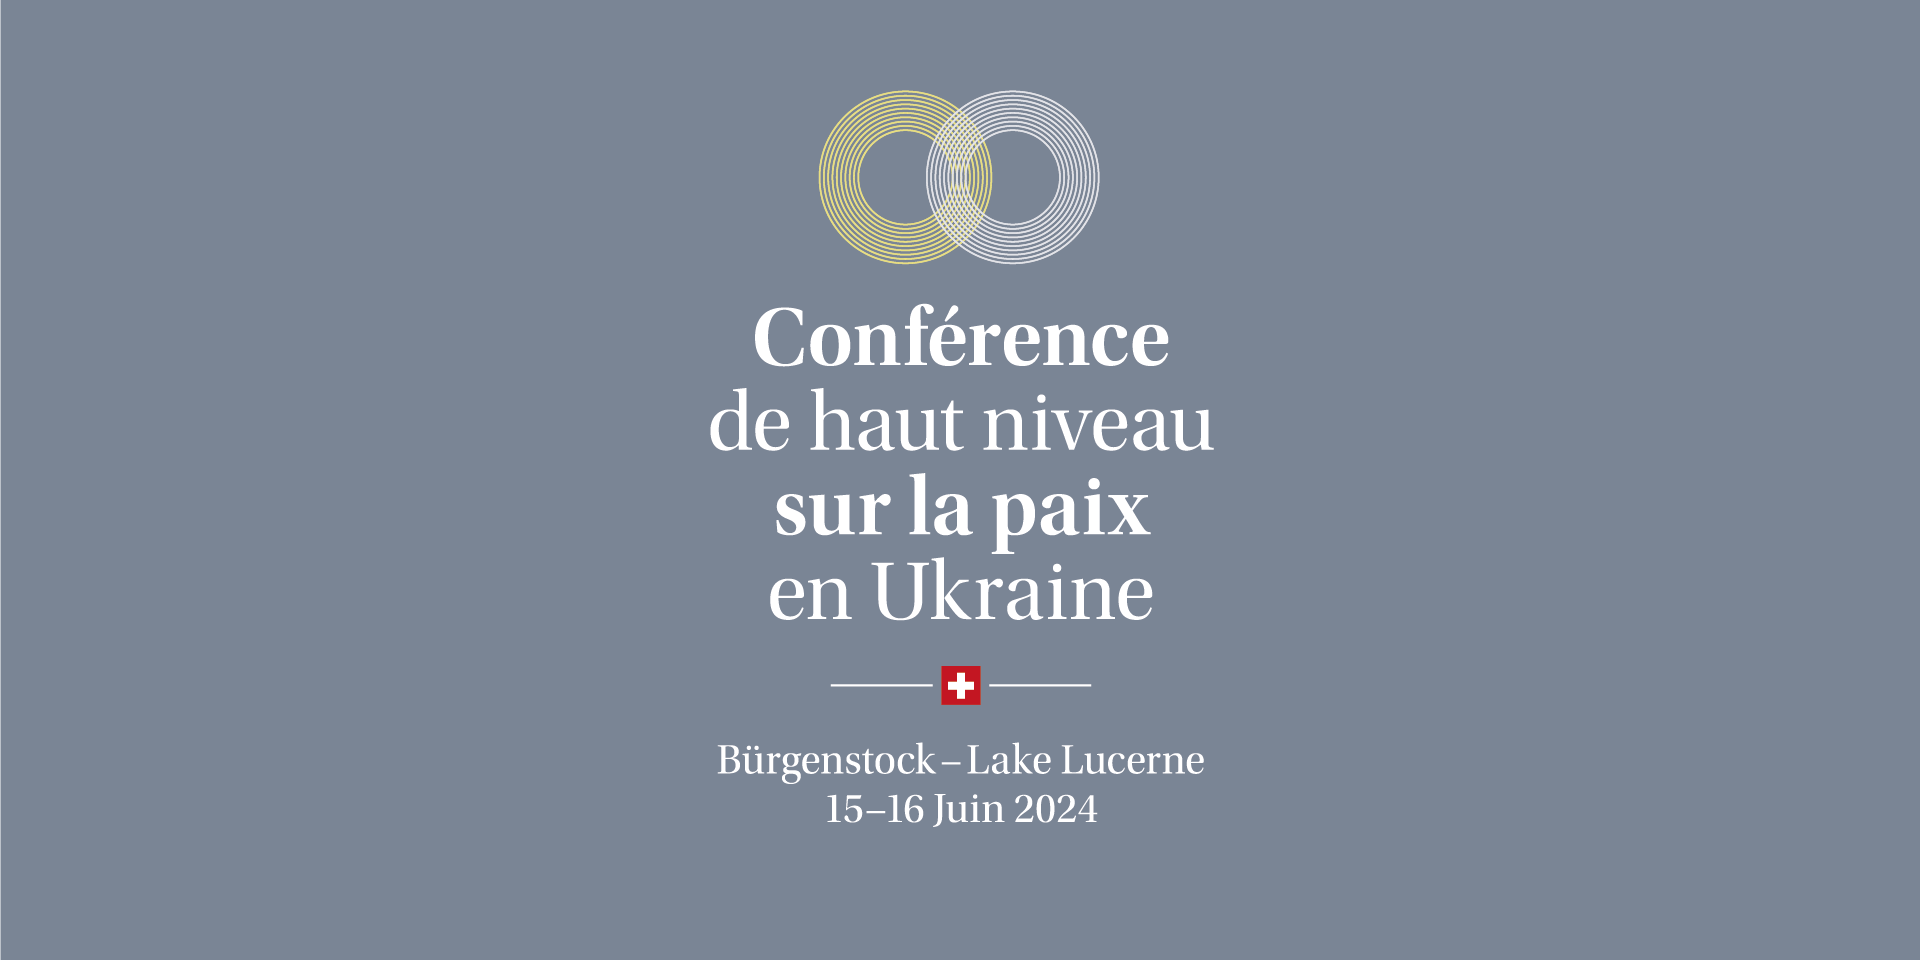 Logo de la conférence de haut niveau sur la paix en Ukraine, Bürgenstock - Lake Lucerne, 15-16 Juin 2024.